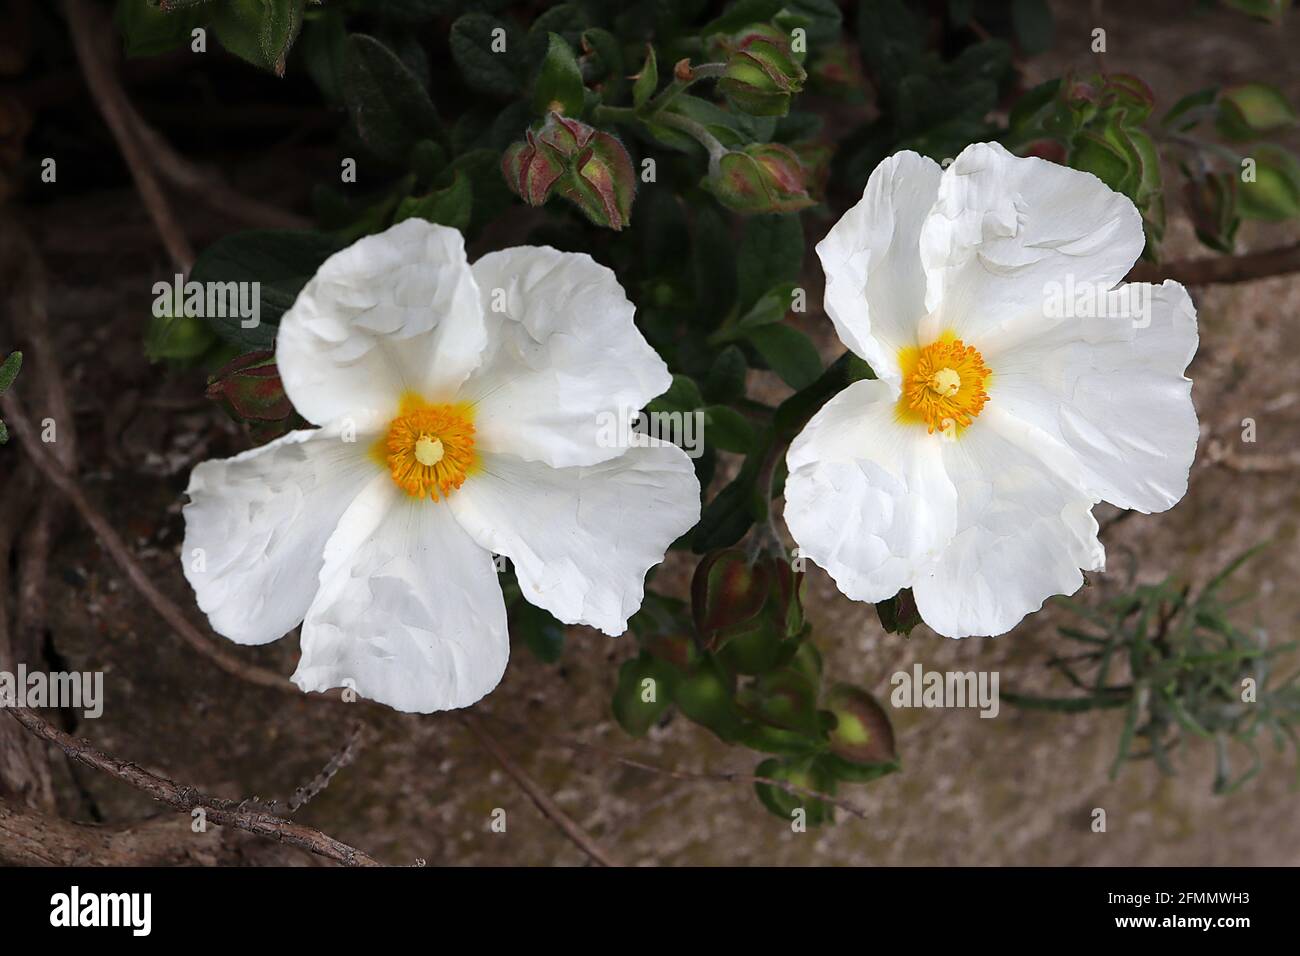 Cistus x obtusifolius ‘thrive’ rock rose THRIVE – fiori bianchi e piccole foglie di verde scuro, maggio, Inghilterra, Regno Unito Foto Stock